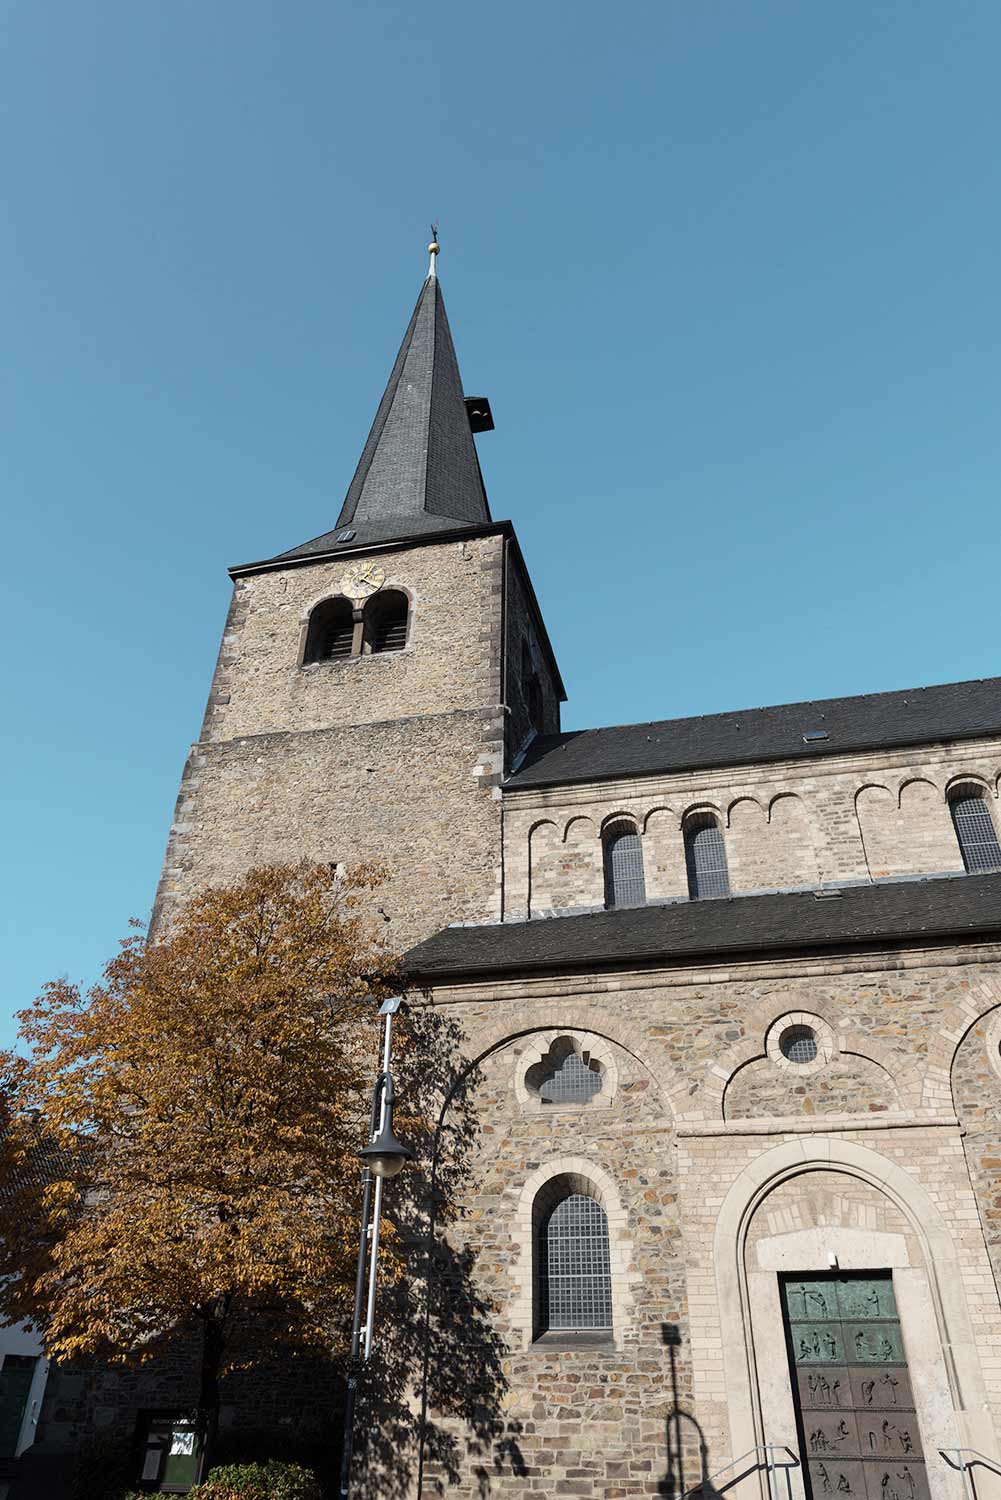 Reformationskirche in Hilden | Mietwagen bei Autovermietung Arndt Hilden